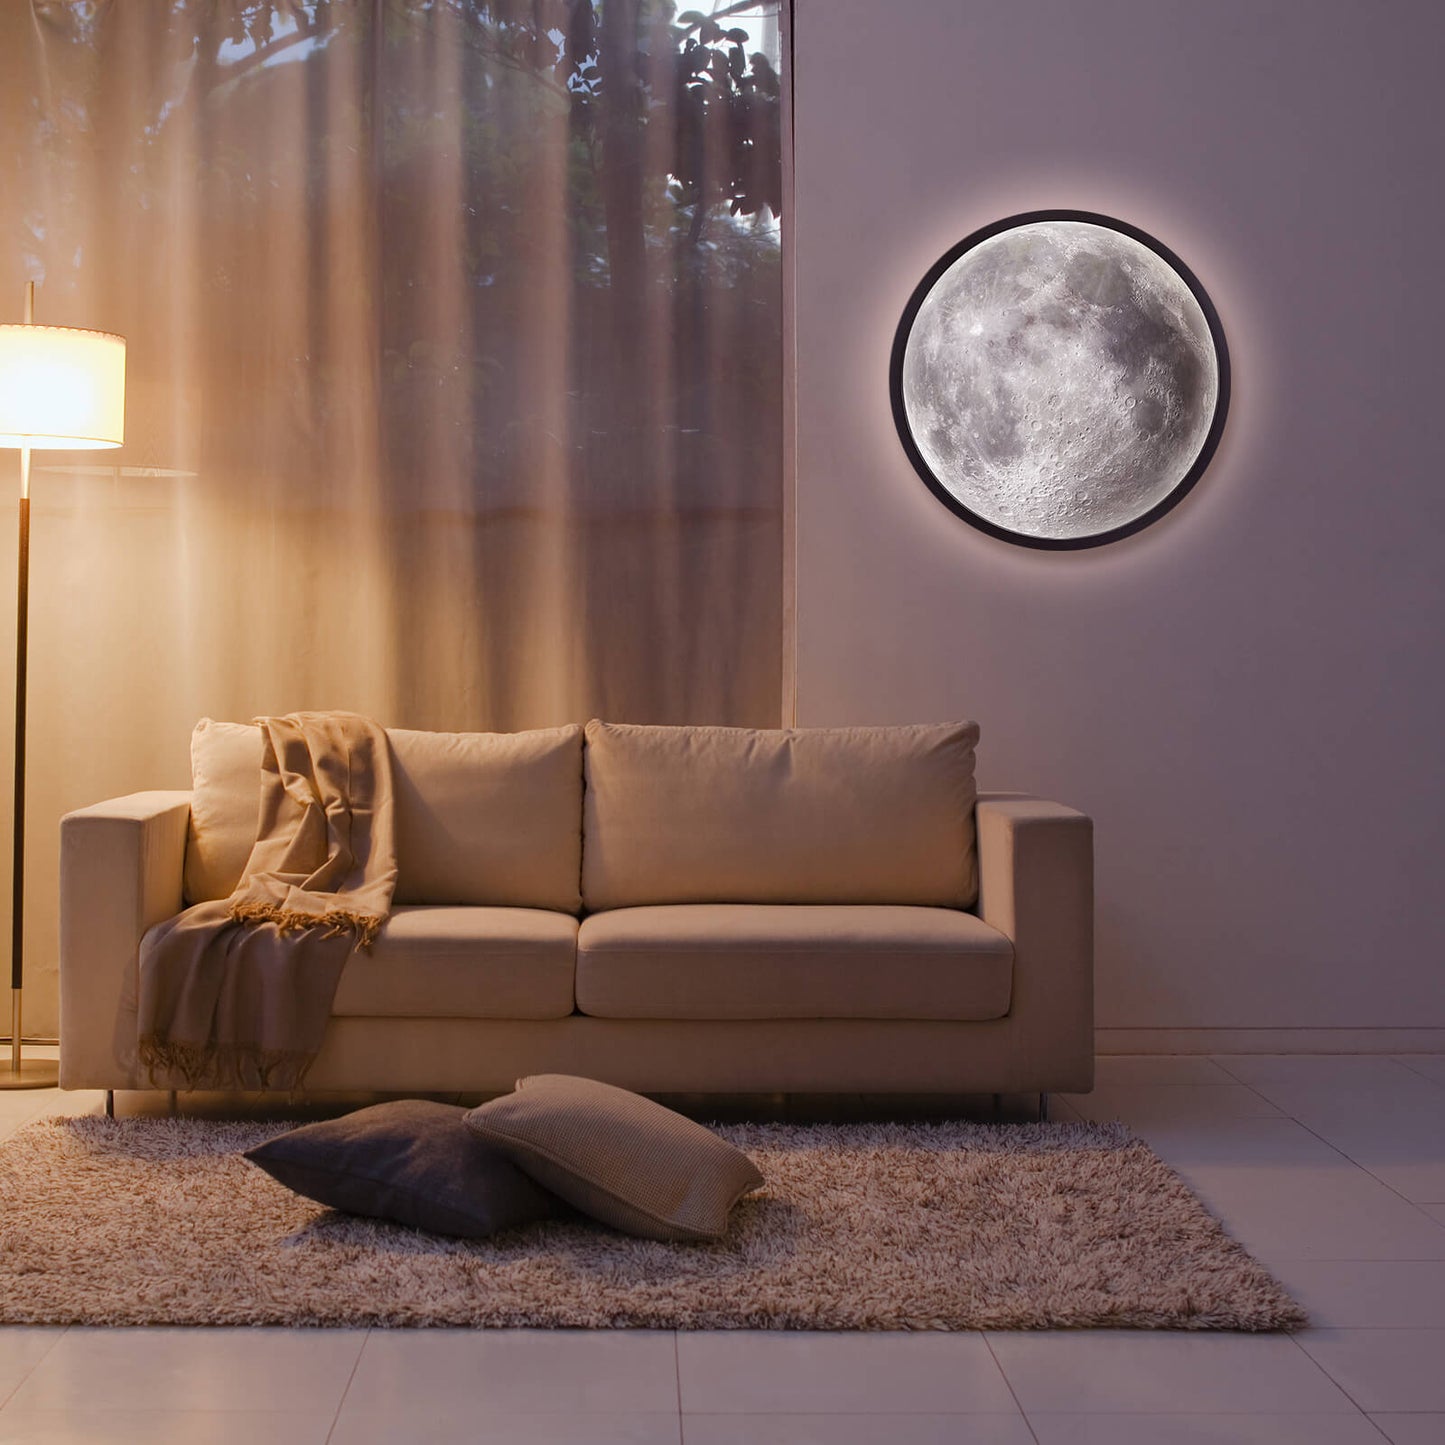 MOON MIRROR | 30cm LED-Wandlampe mit Spiegel und Monddesign